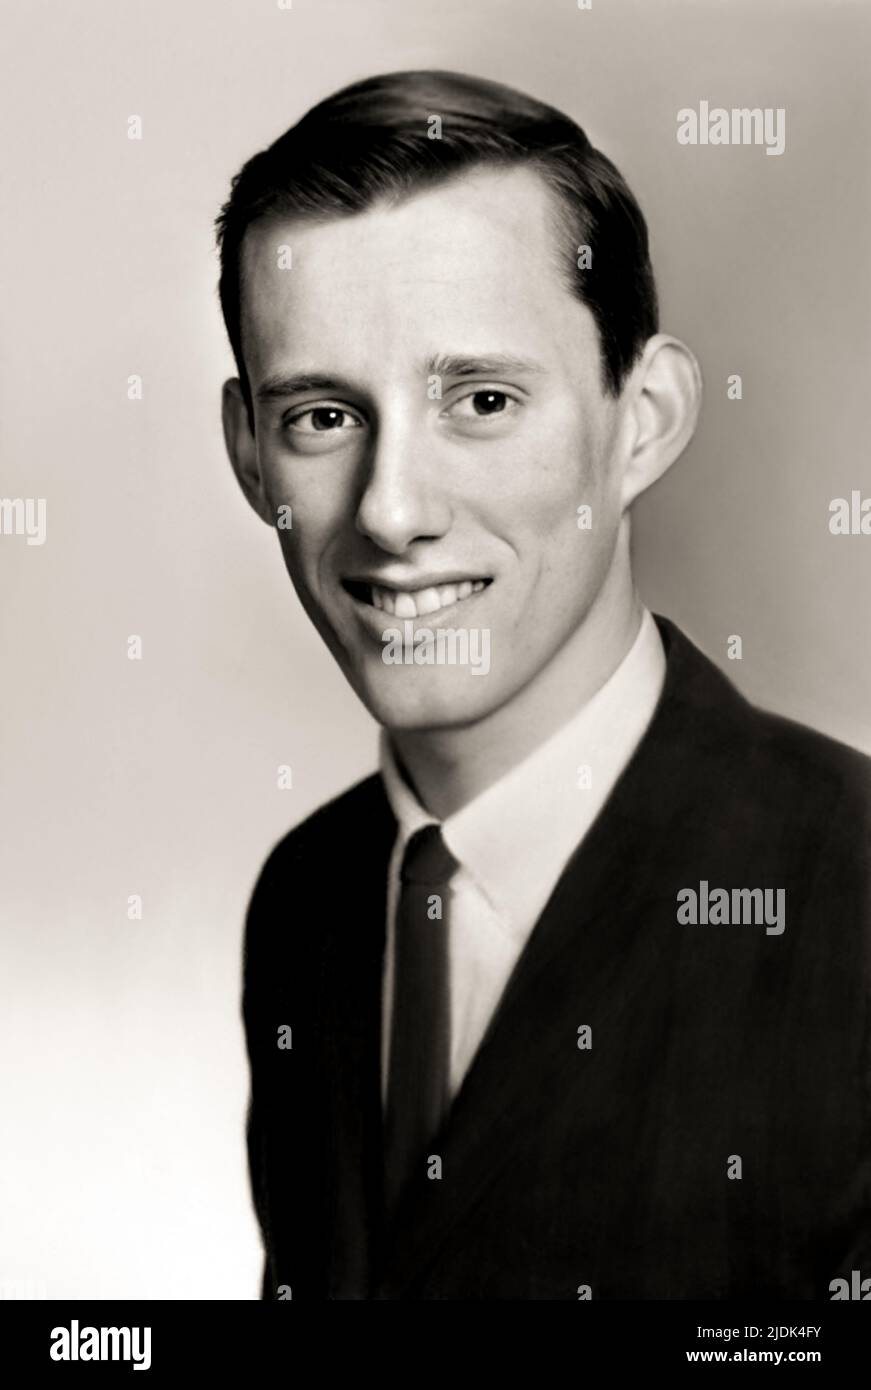 1964 , Warwick, Rhode Island , USA : der amerikanische Schauspieler JAMES WOOD ( geboren am 18. april 1947 ), 17 Jahre alt, Foto aus dem High School Yearbook . Unbekannter Fotograf .- GESCHICHTE - FOTO STORICHE - ATTORE - FILM - KINO - personalità da giovane giovani - Persönlichkeiten, die jung waren - PORTRÄT - RITRATTO - TEENAGER - ADOLESCENZA - ADOLESCENTE - Lächeln - sorriso --- ARCHIVIO GBB Stockfoto